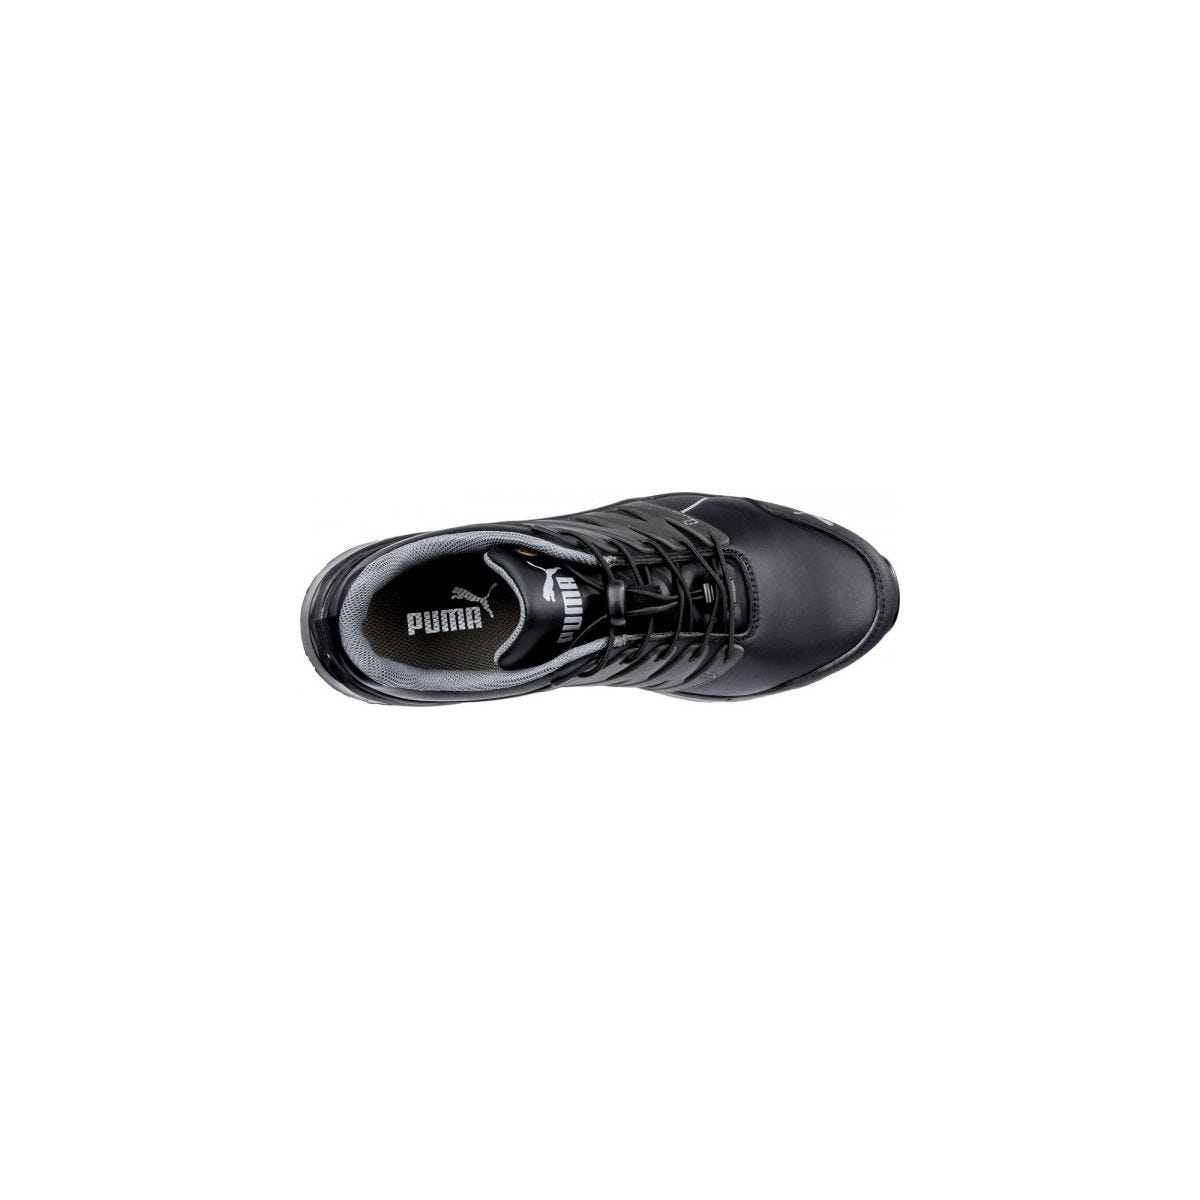 Chaussures de sécurité Velocity 2.0 Noir Low S3 - Puma - Taille 45 3